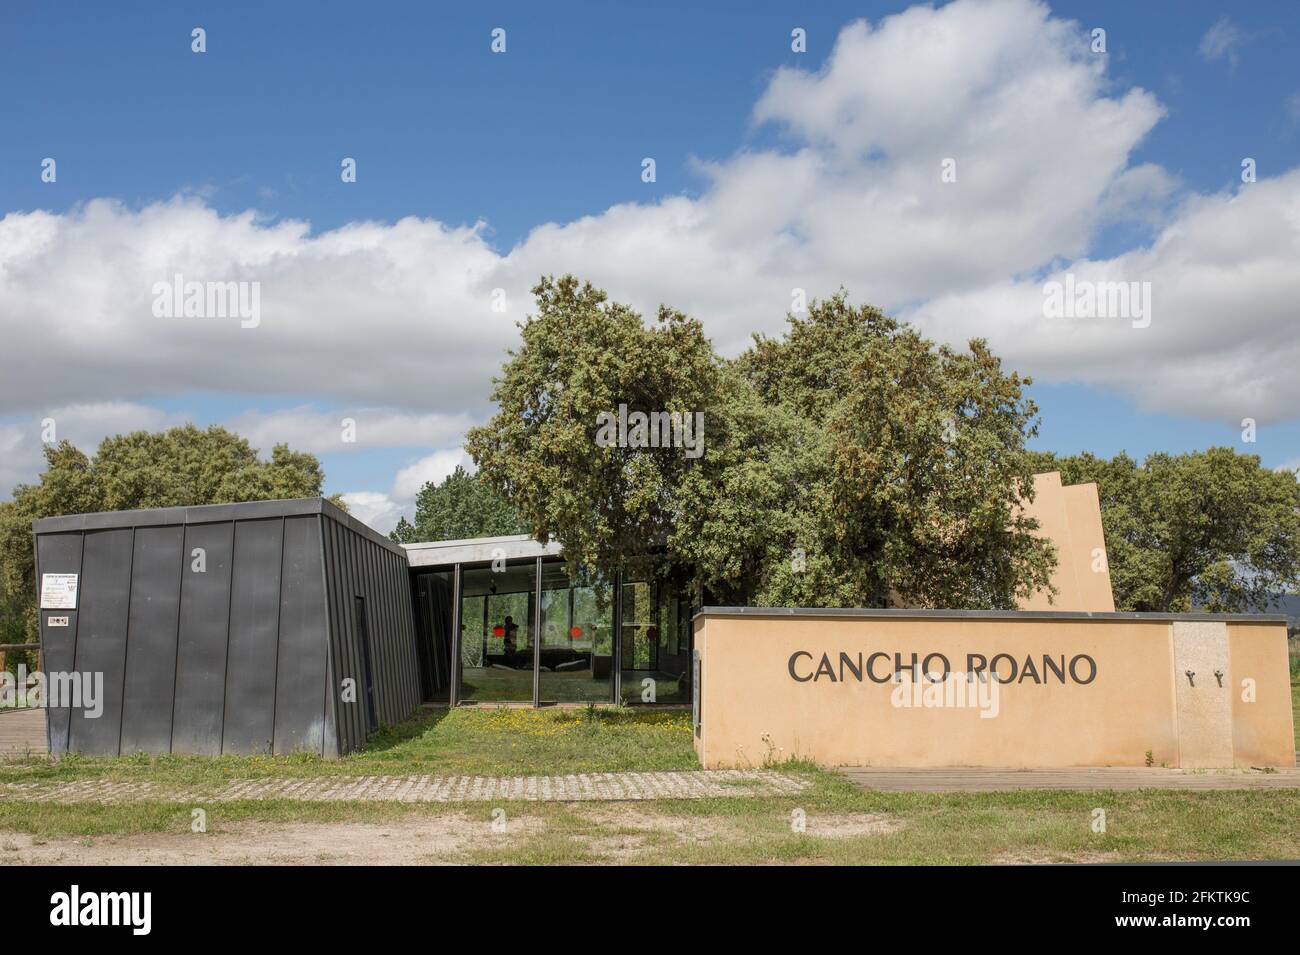 Cancho Roano centro de interpretación al aire libre. Mejor conservado sitio de Tartessia. Zalamea de la Serena, Extremadura, España. Foto de stock